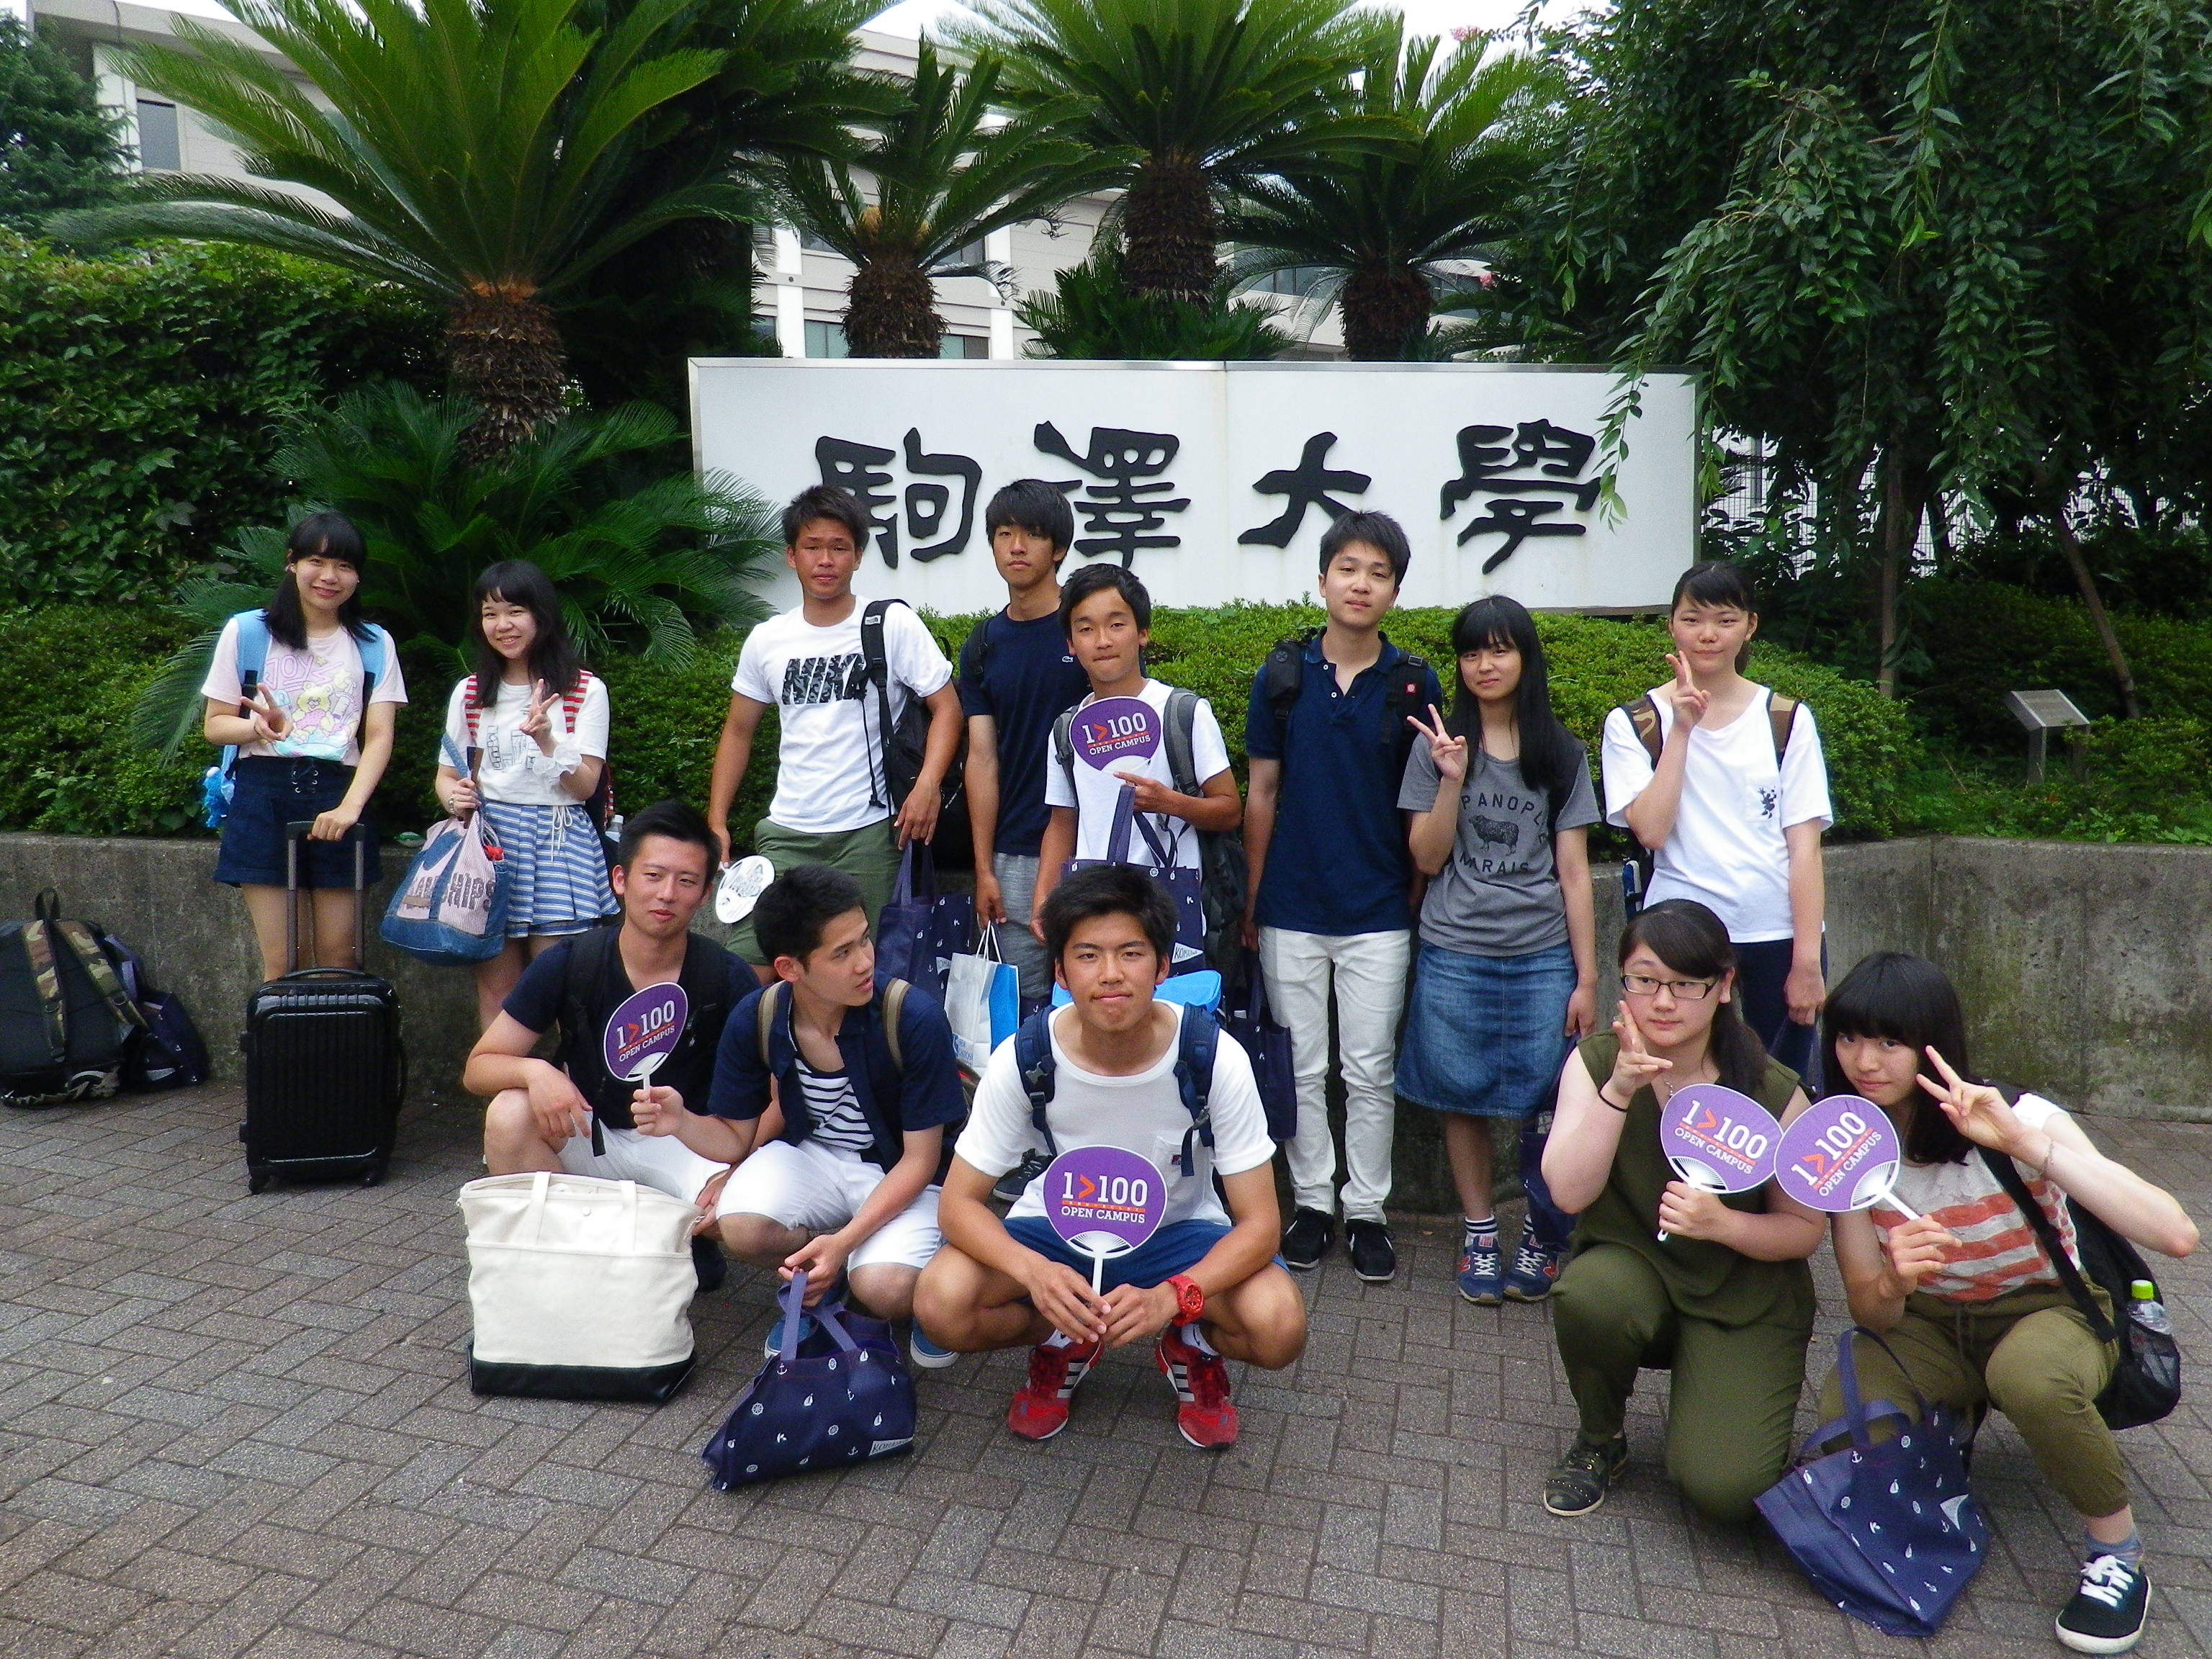 東京 駒澤大学のオープンキャンパスへ行ってきました 駒澤大学附属苫小牧高等学校